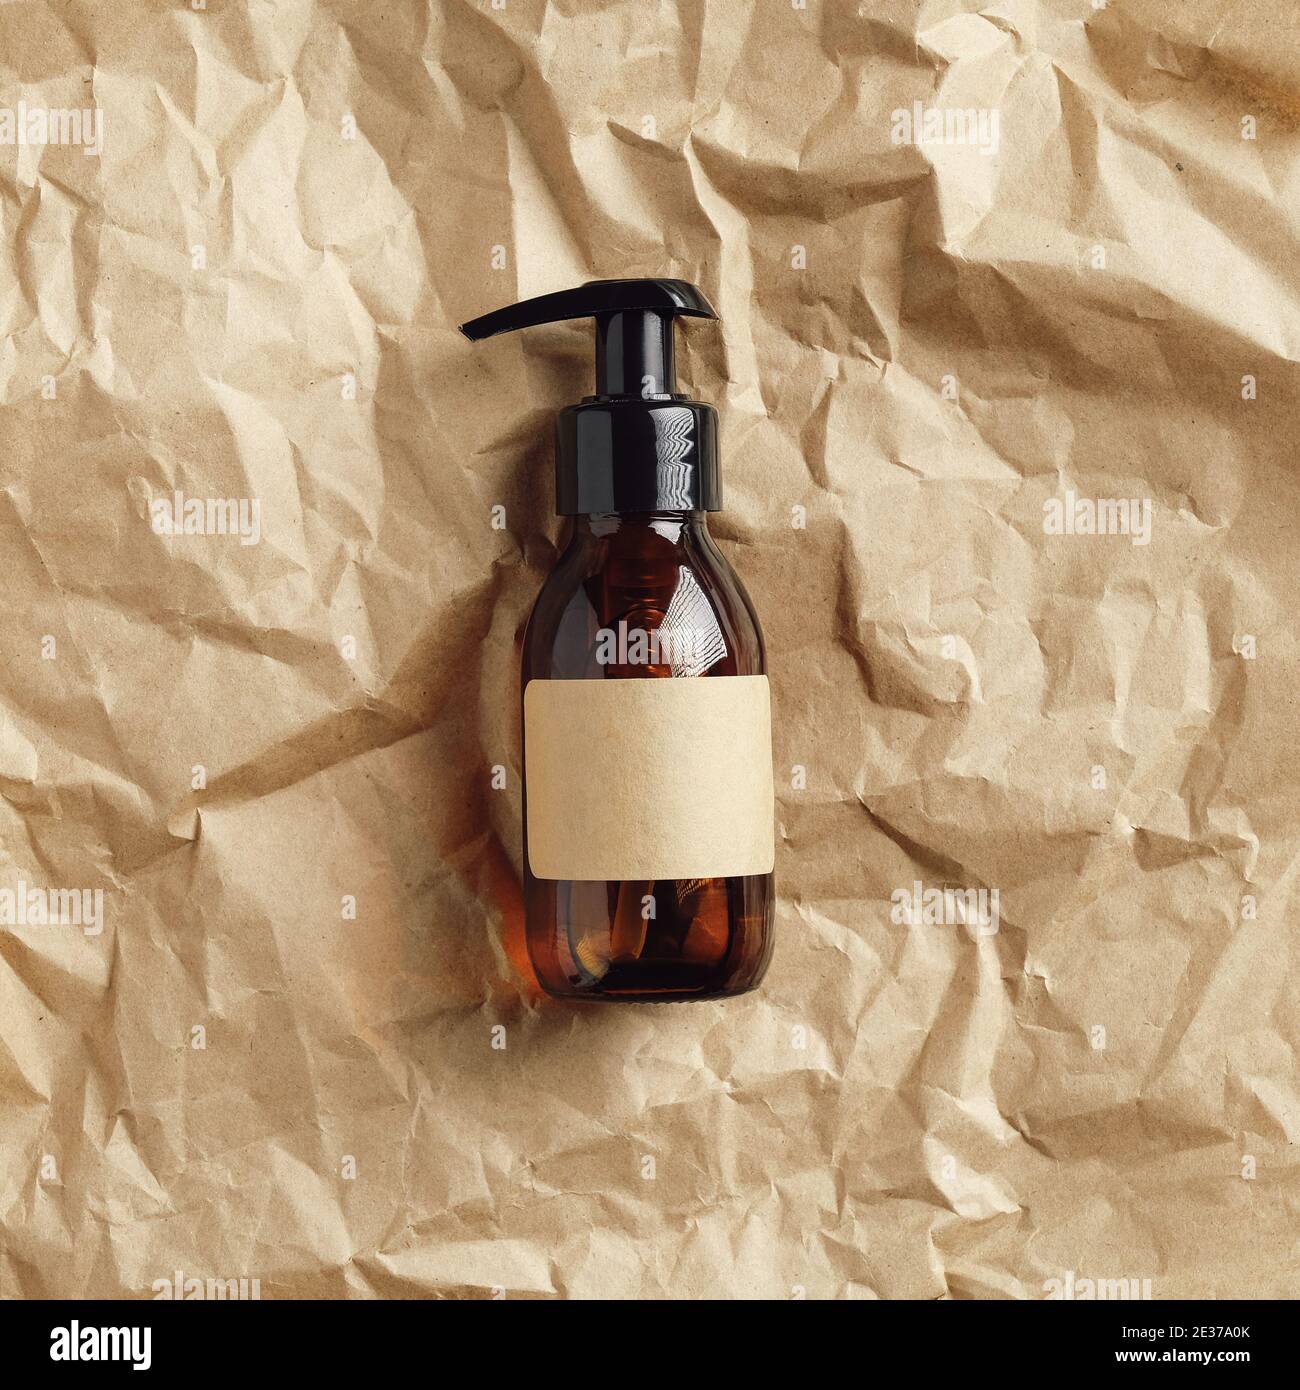 Amber Glas Seifenspender Flasche auf Kraftpapier Draufsicht.  Beauty-Produkte Design, Container Mockup für natürliche Bio-Kosmetik  Stockfotografie - Alamy